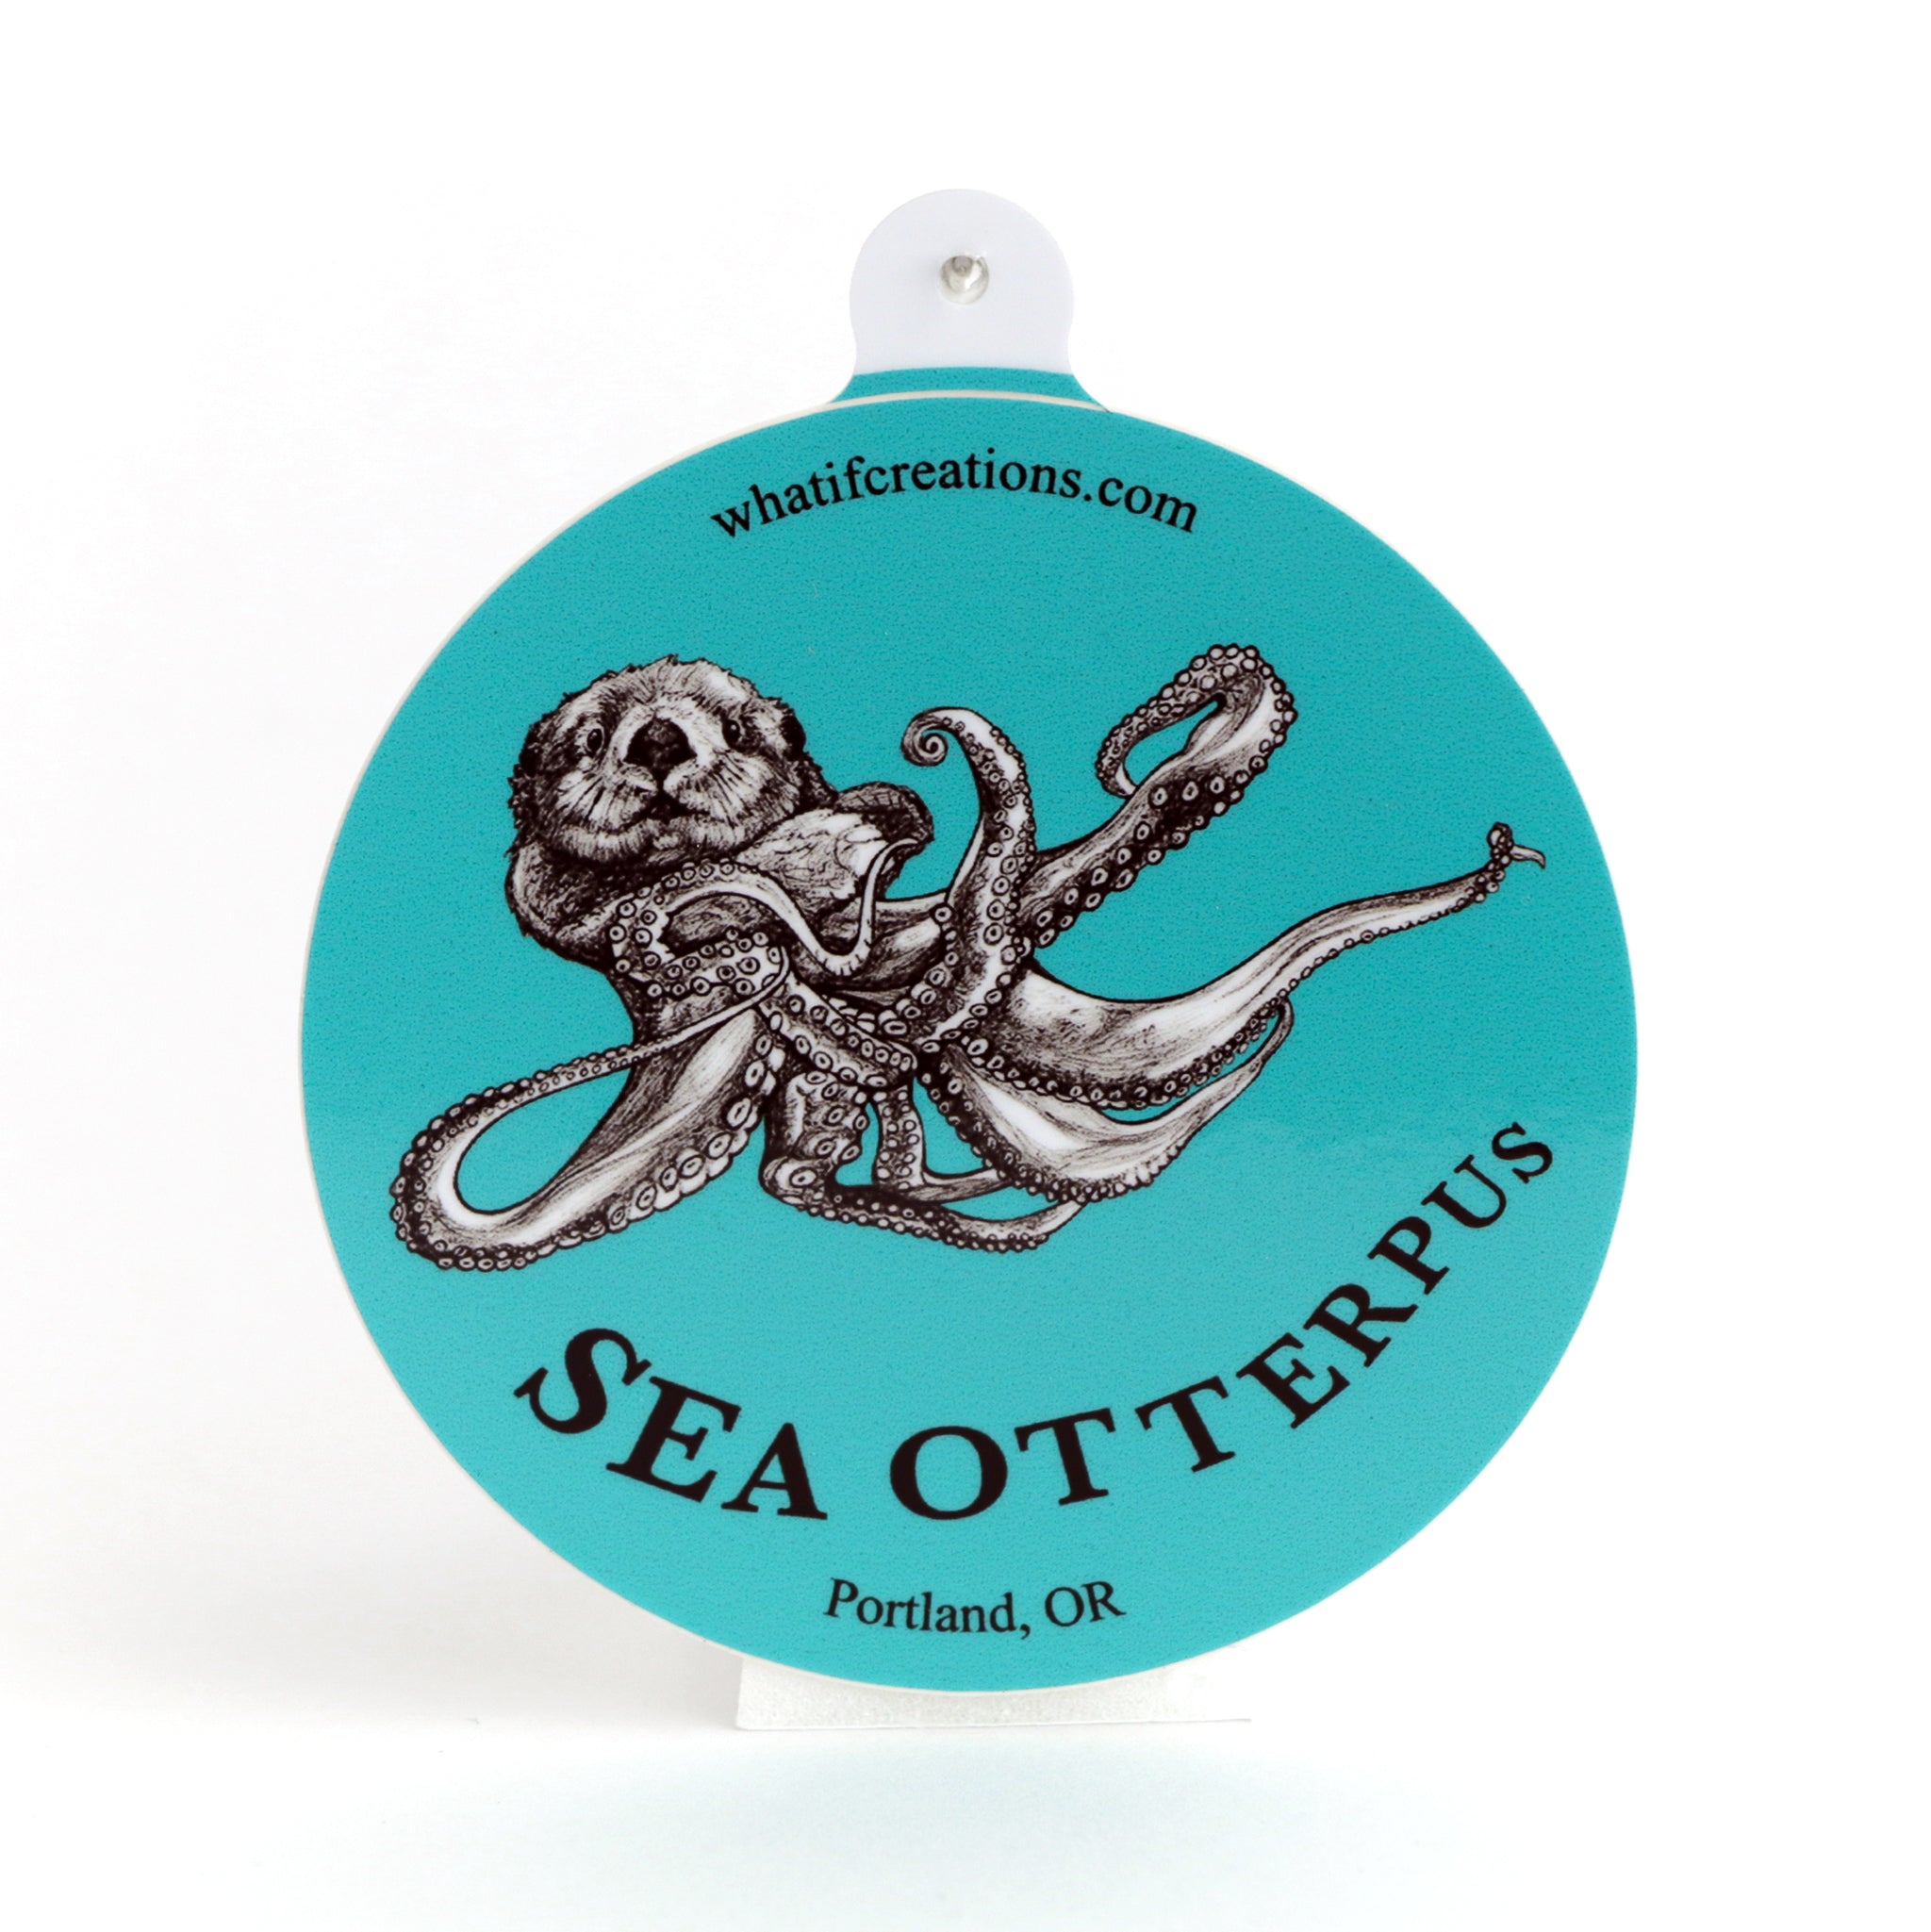 Sea Otterpus | Sea Otter + Octopus Hybrid Animal | 3" Vinyl Sticker